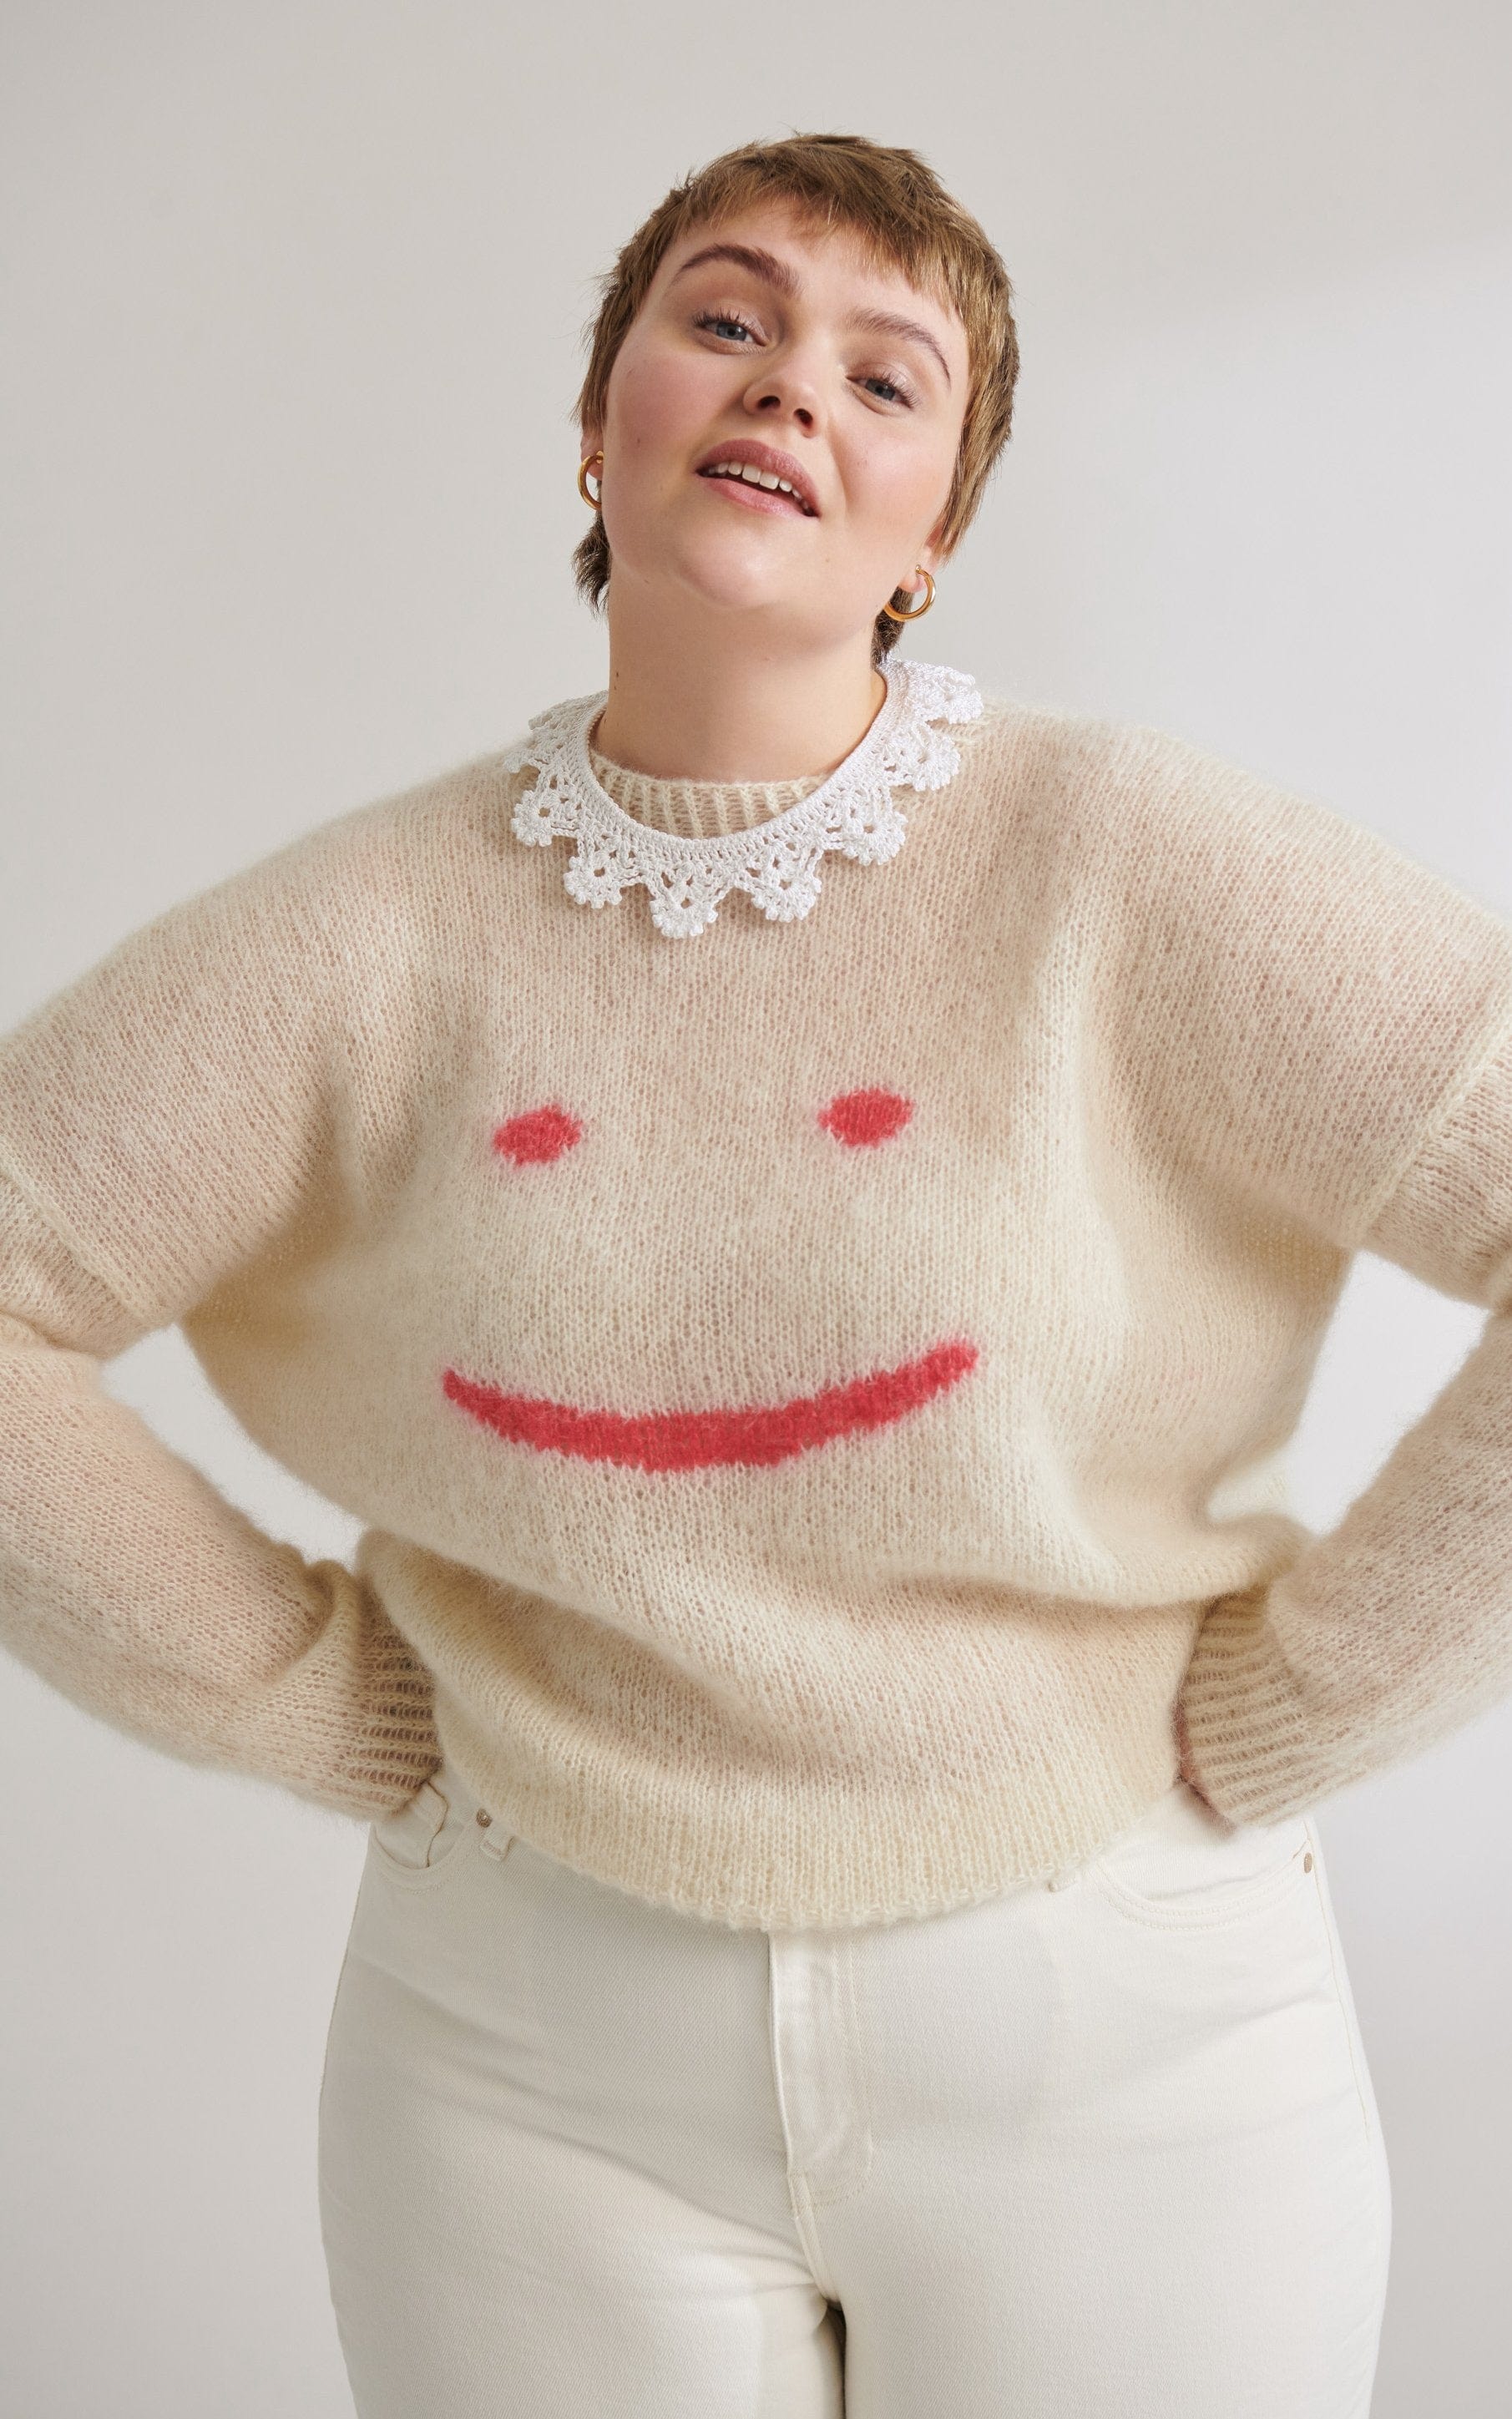 Pullover mit Smiley - Plus Size - SILKHAIR - Strickset von LANA GROSSA jetzt online kaufen bei OONIQUE